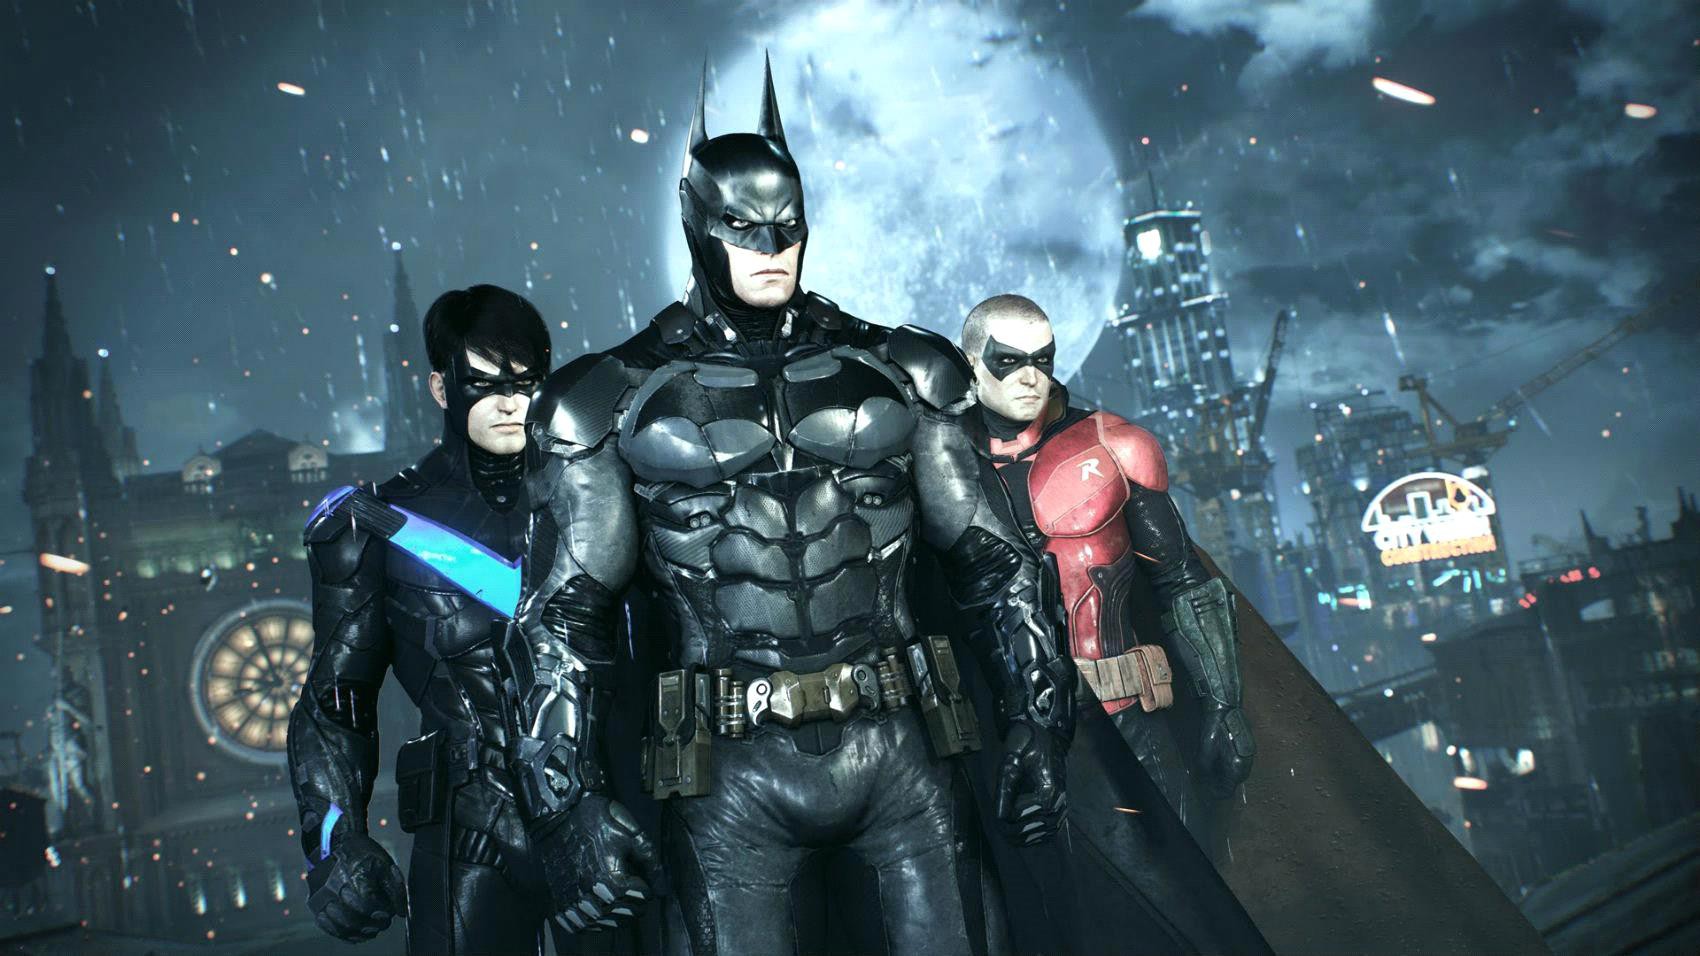 Series đình đám Batman chuẩn bị ra mắt phần game mới